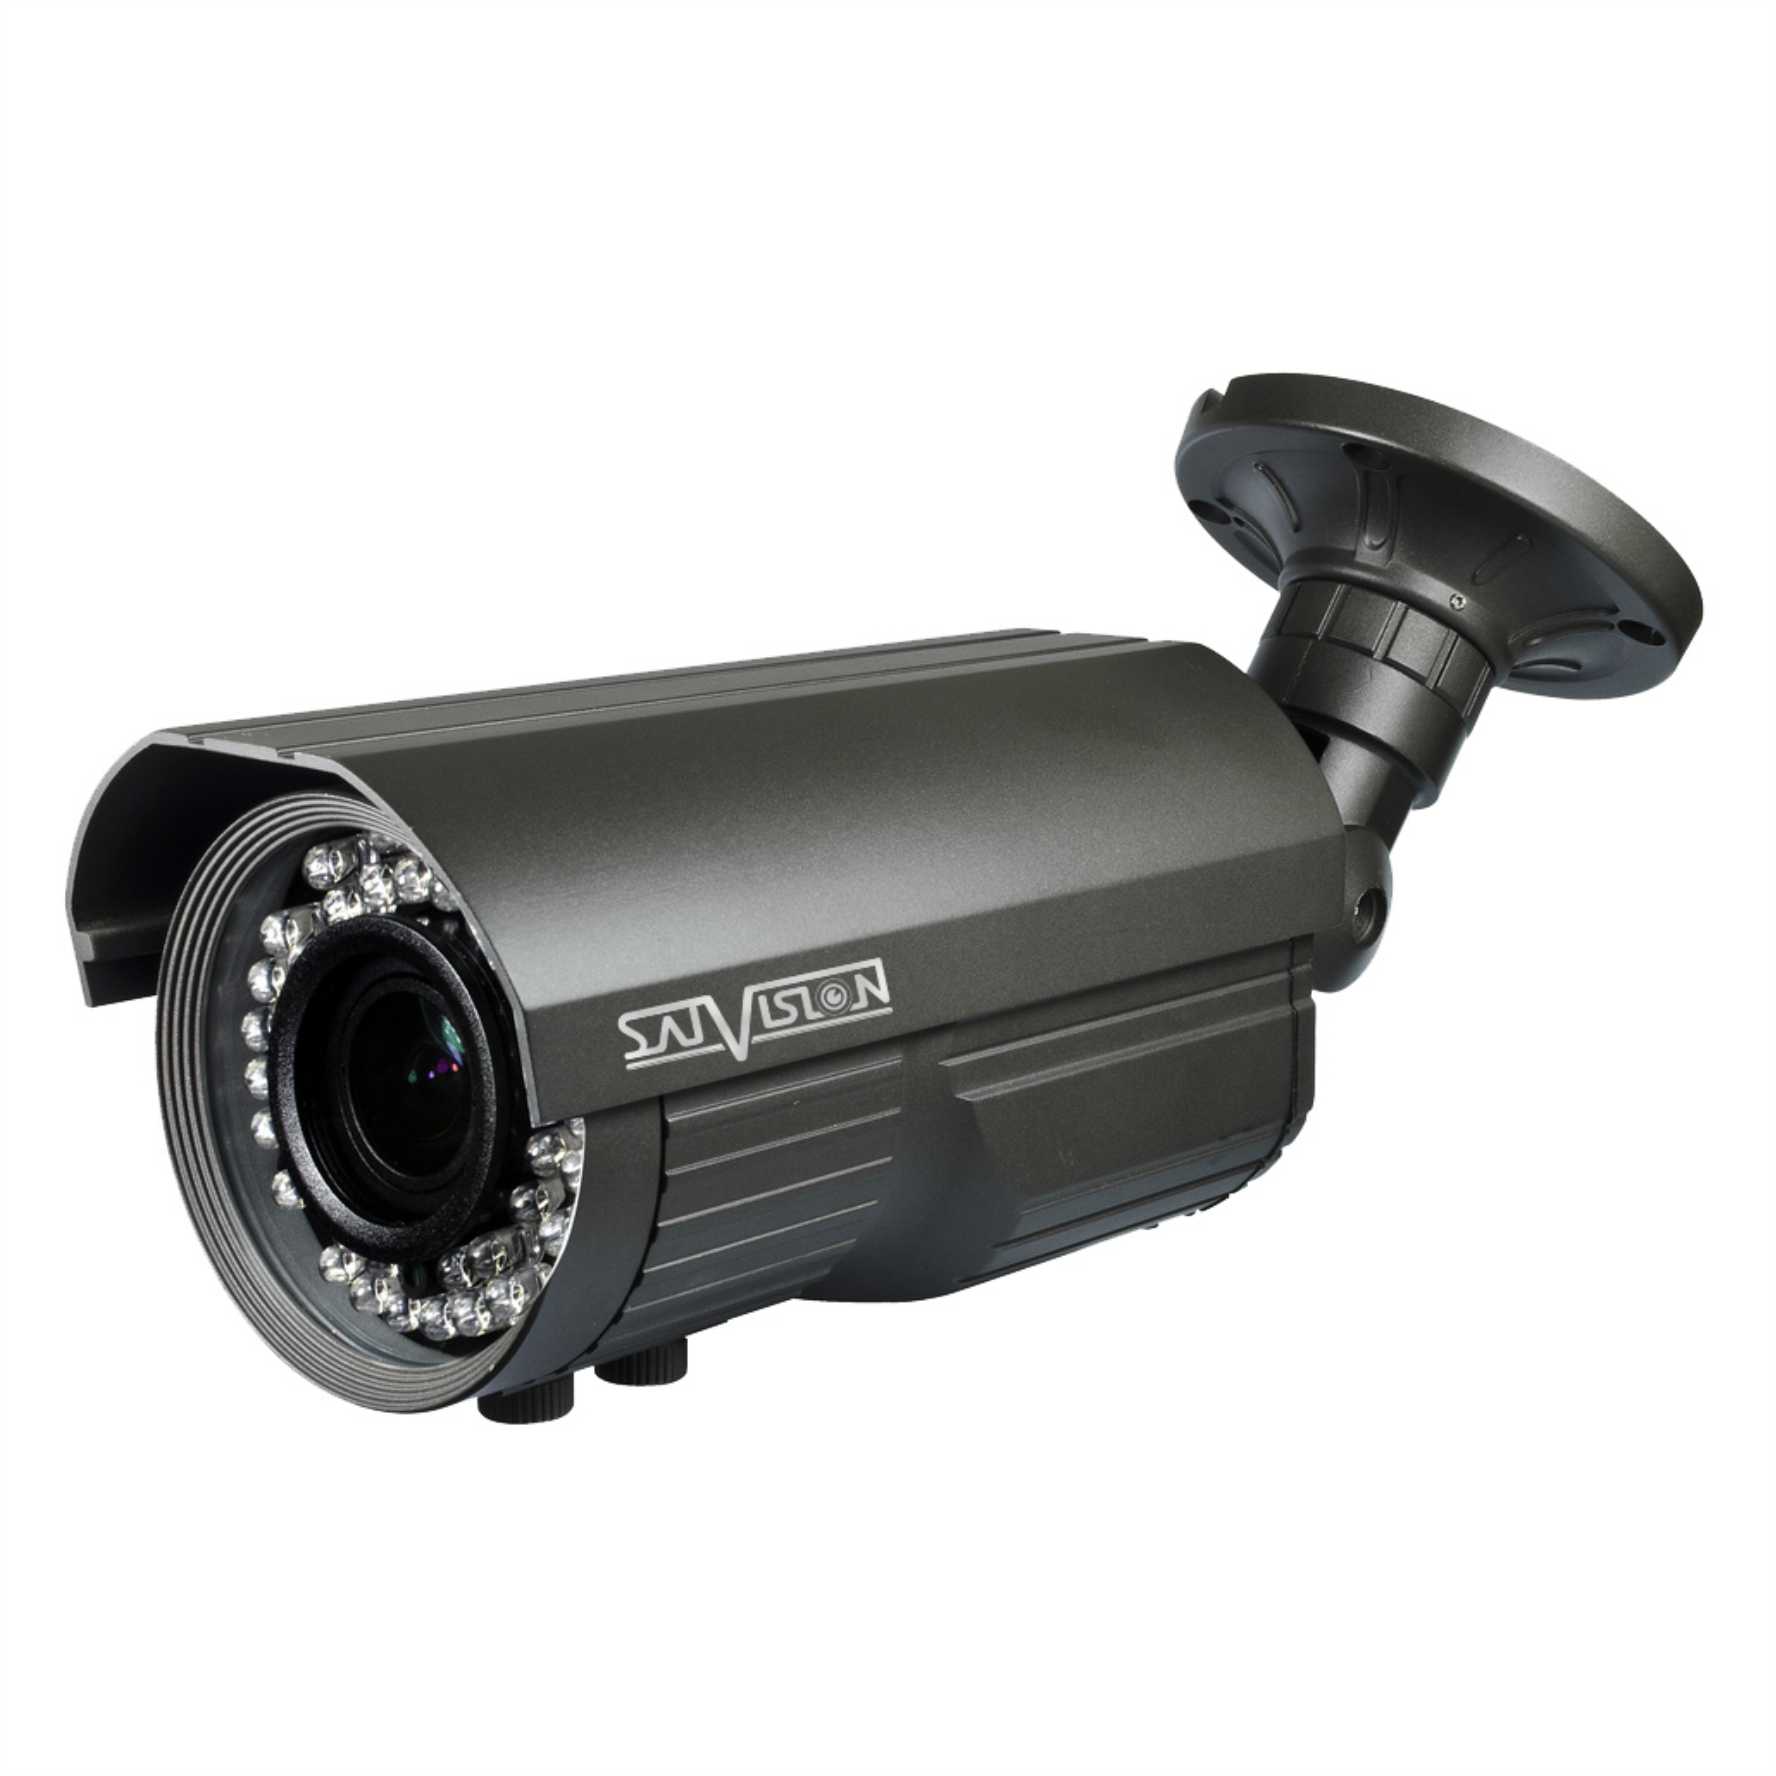 SVC-S59V 5-50 (1 Mpix, ИК до 60м) уличная камера системы видеонаблюдения Satvision